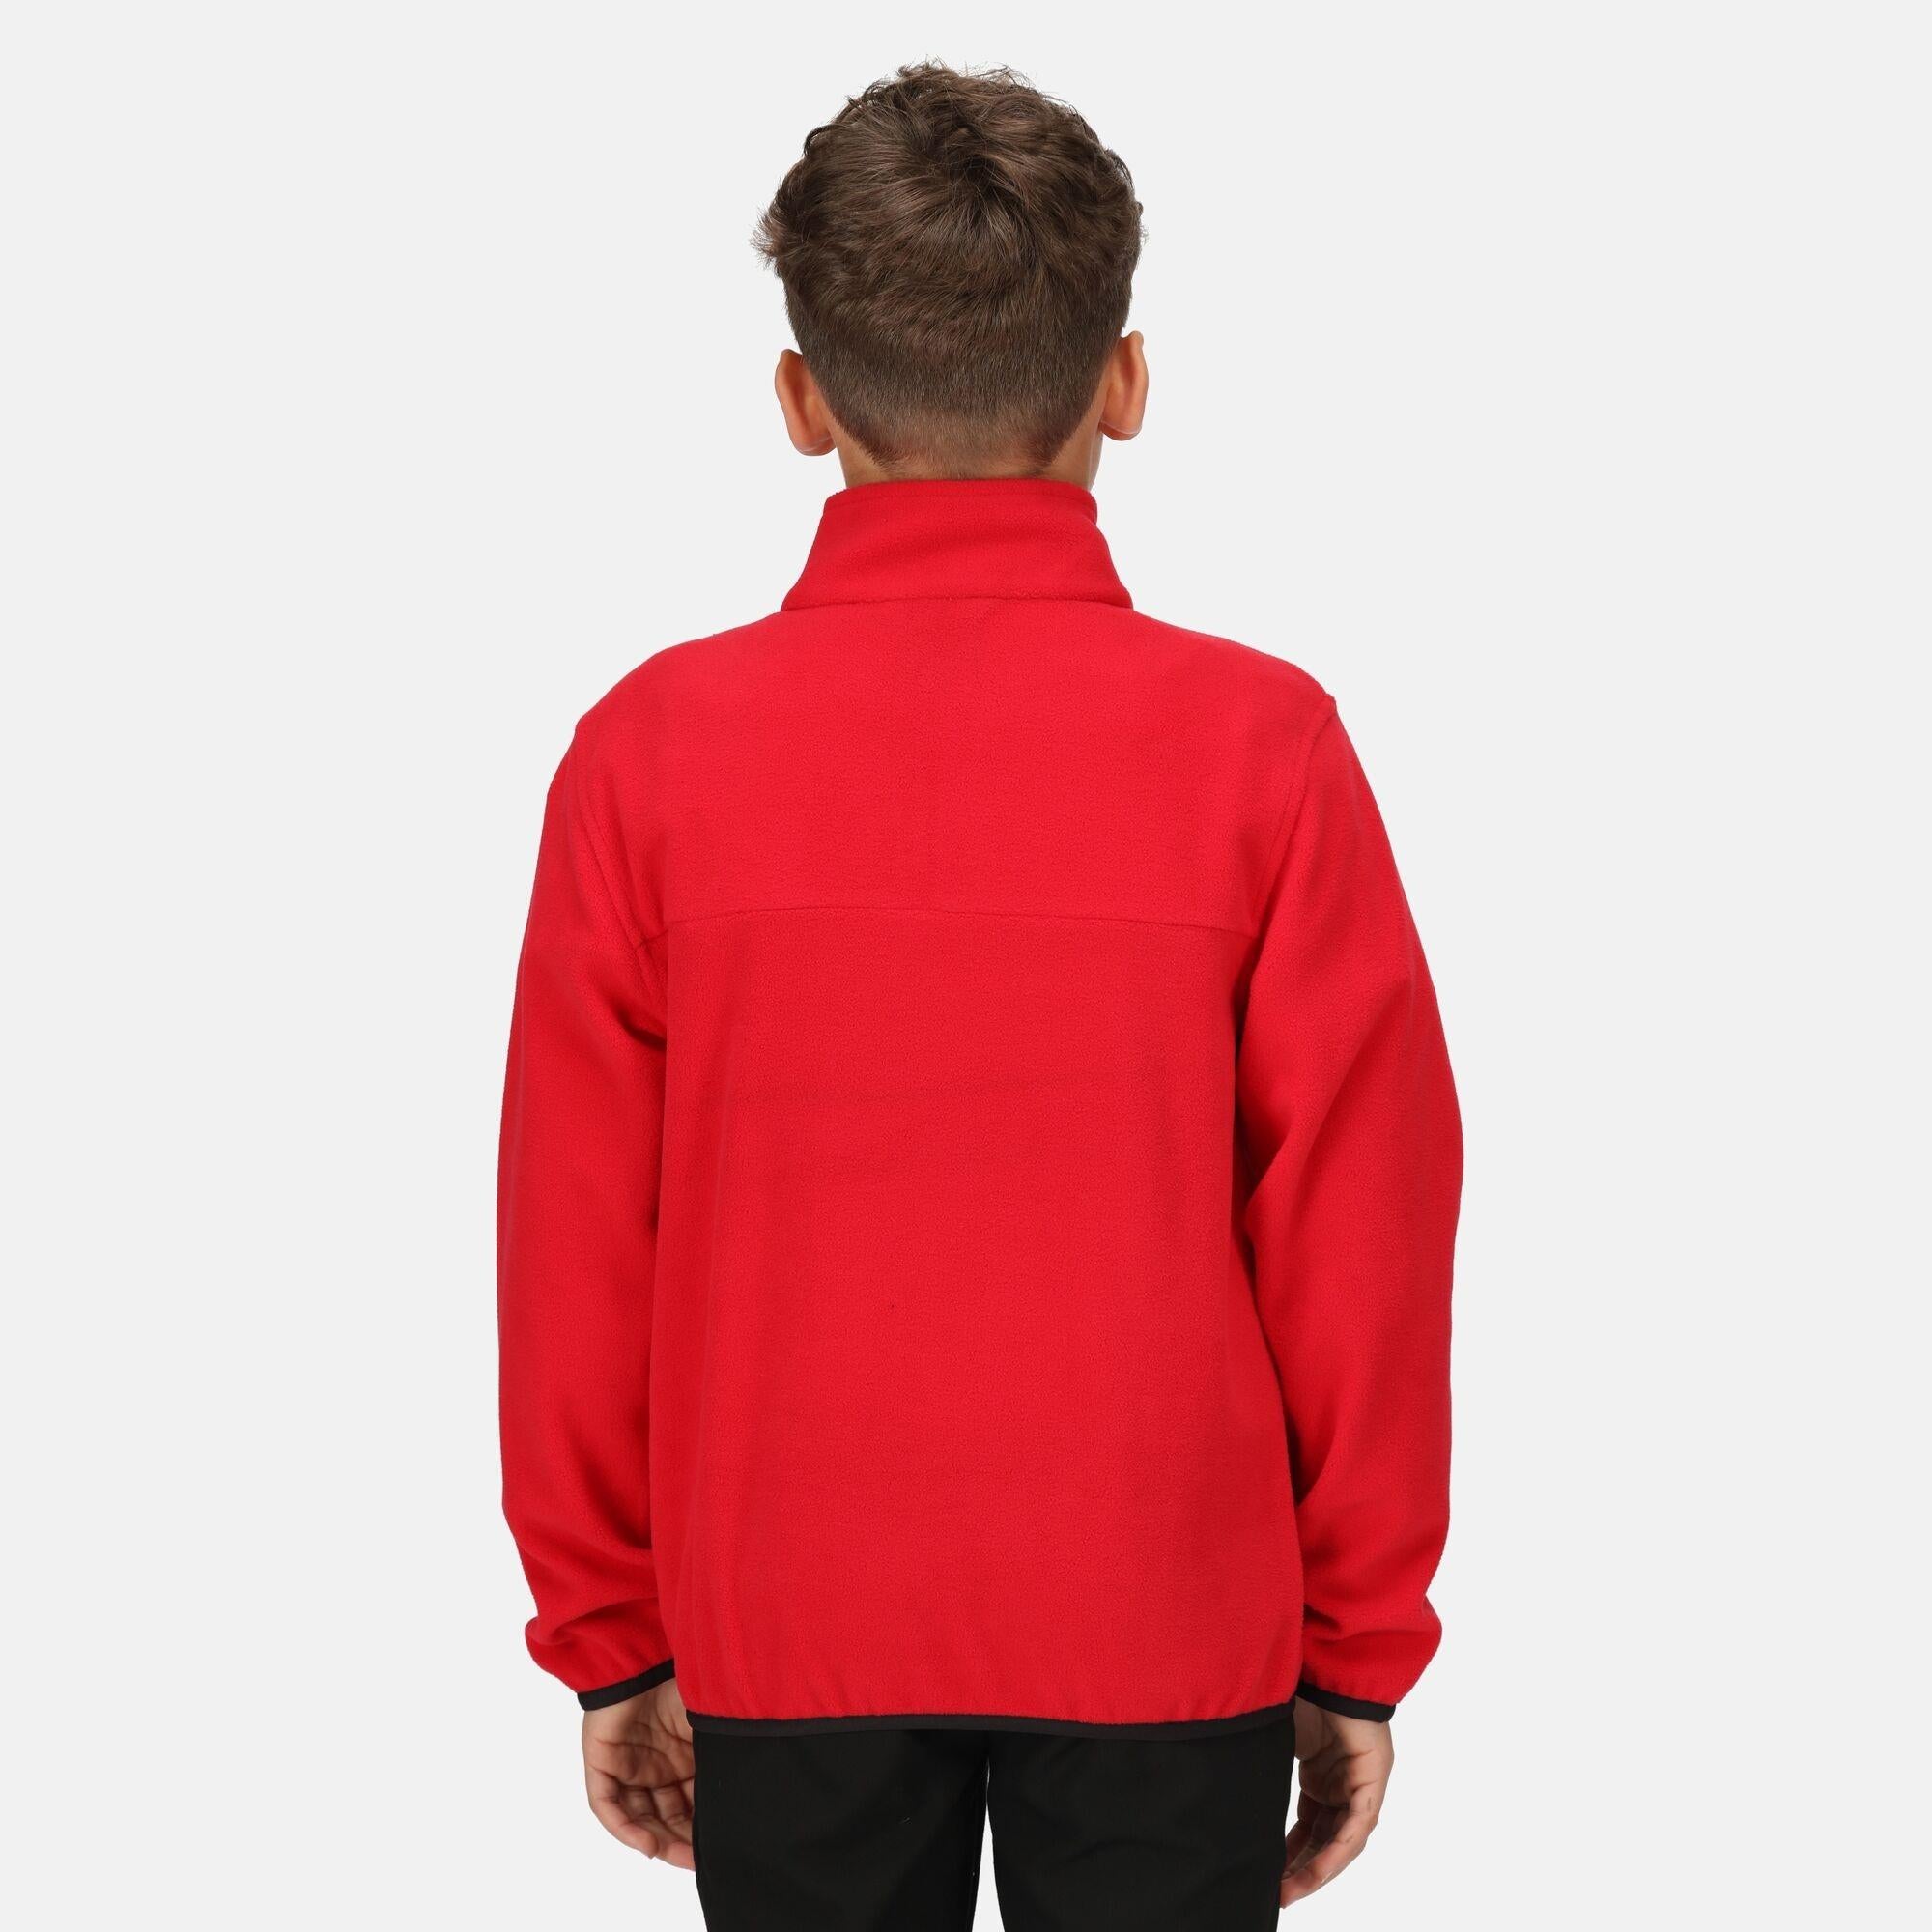 Regatta Junior red kid's warm quick-dry half-zip micro-fleece #TRF679